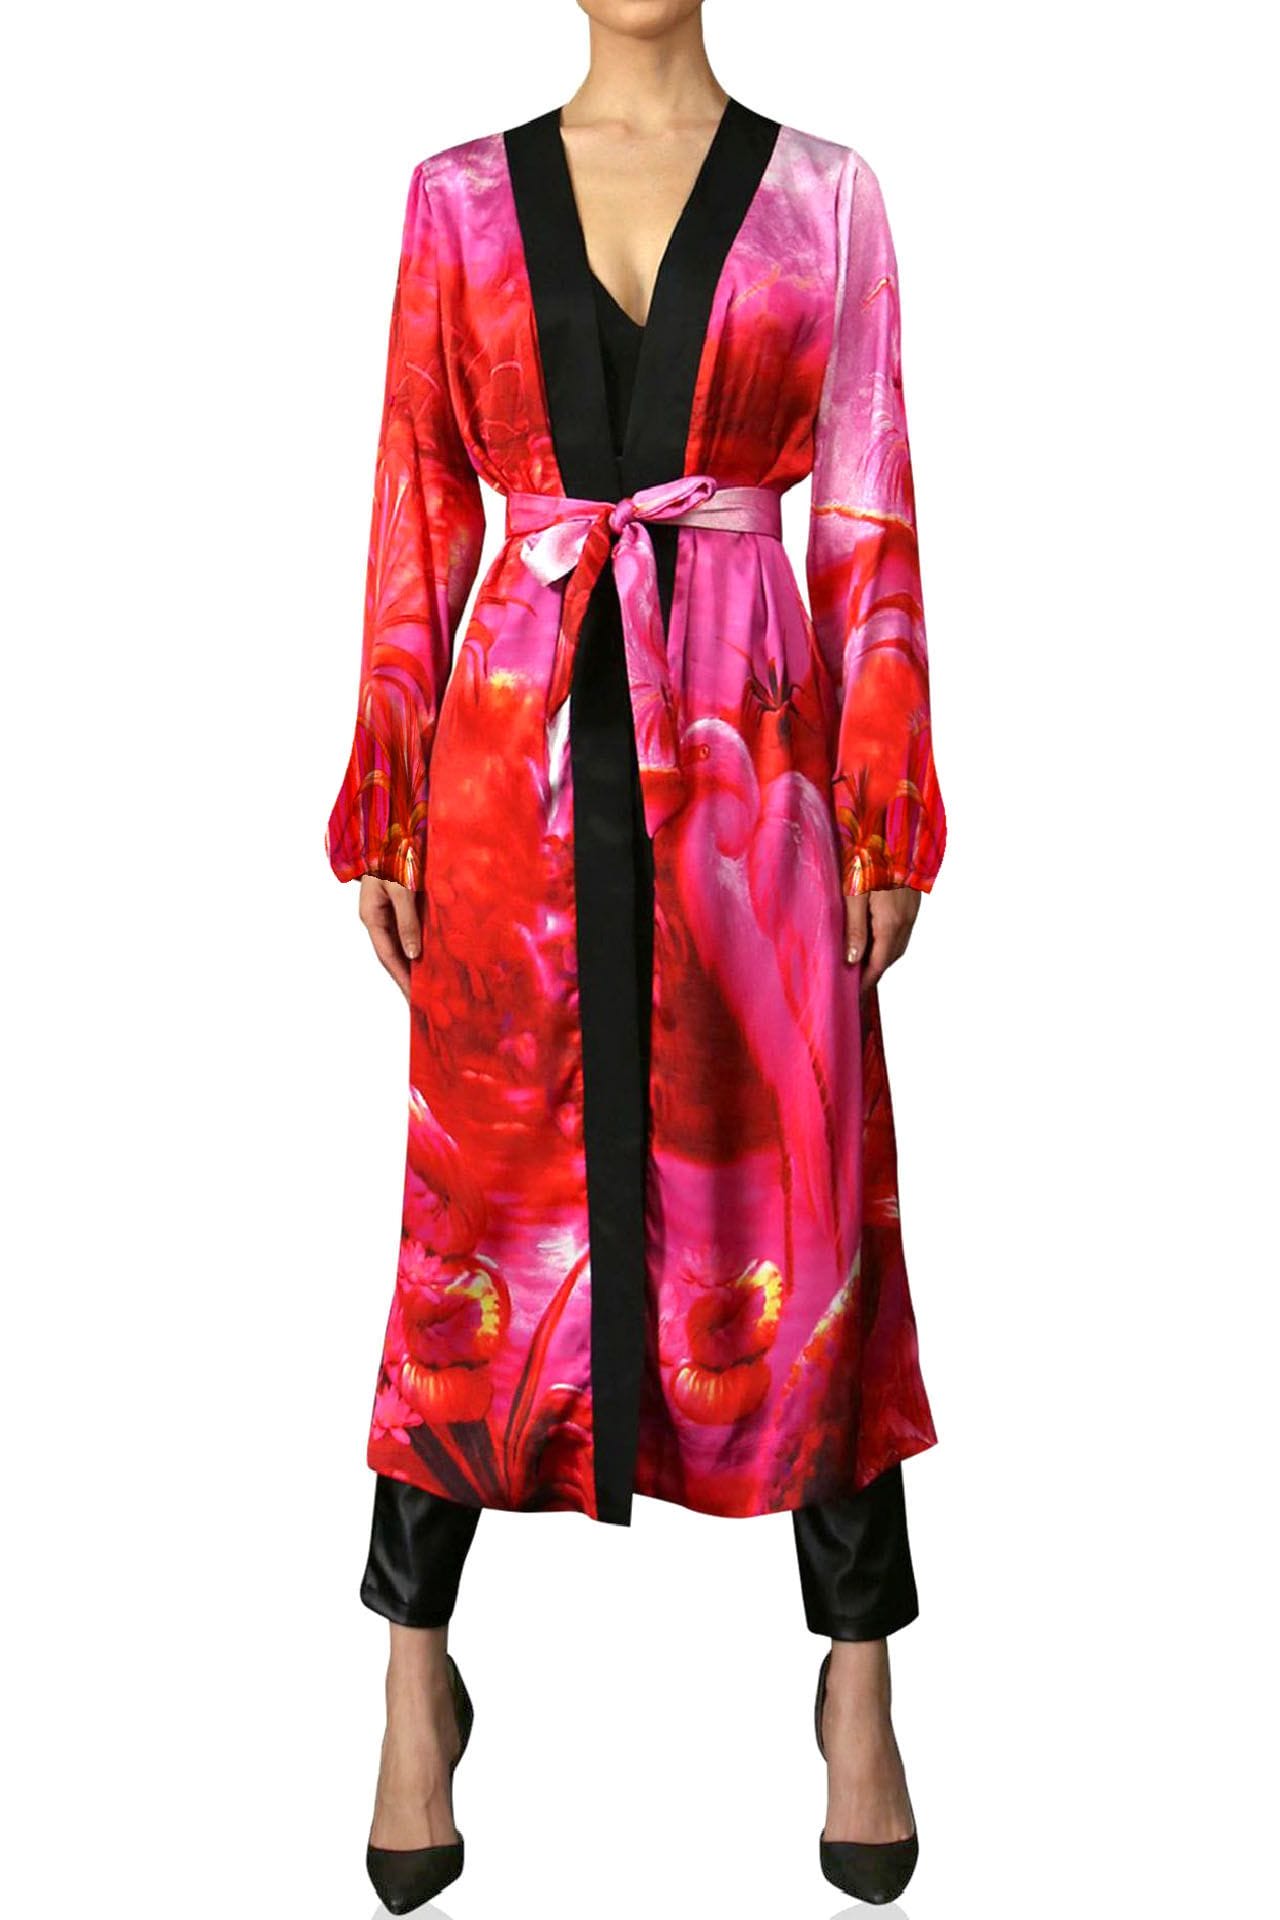 "Kyle X Shahida" "kimono print" "washable silk robe" "silk kimono robe womens" "hot pink robe silk"